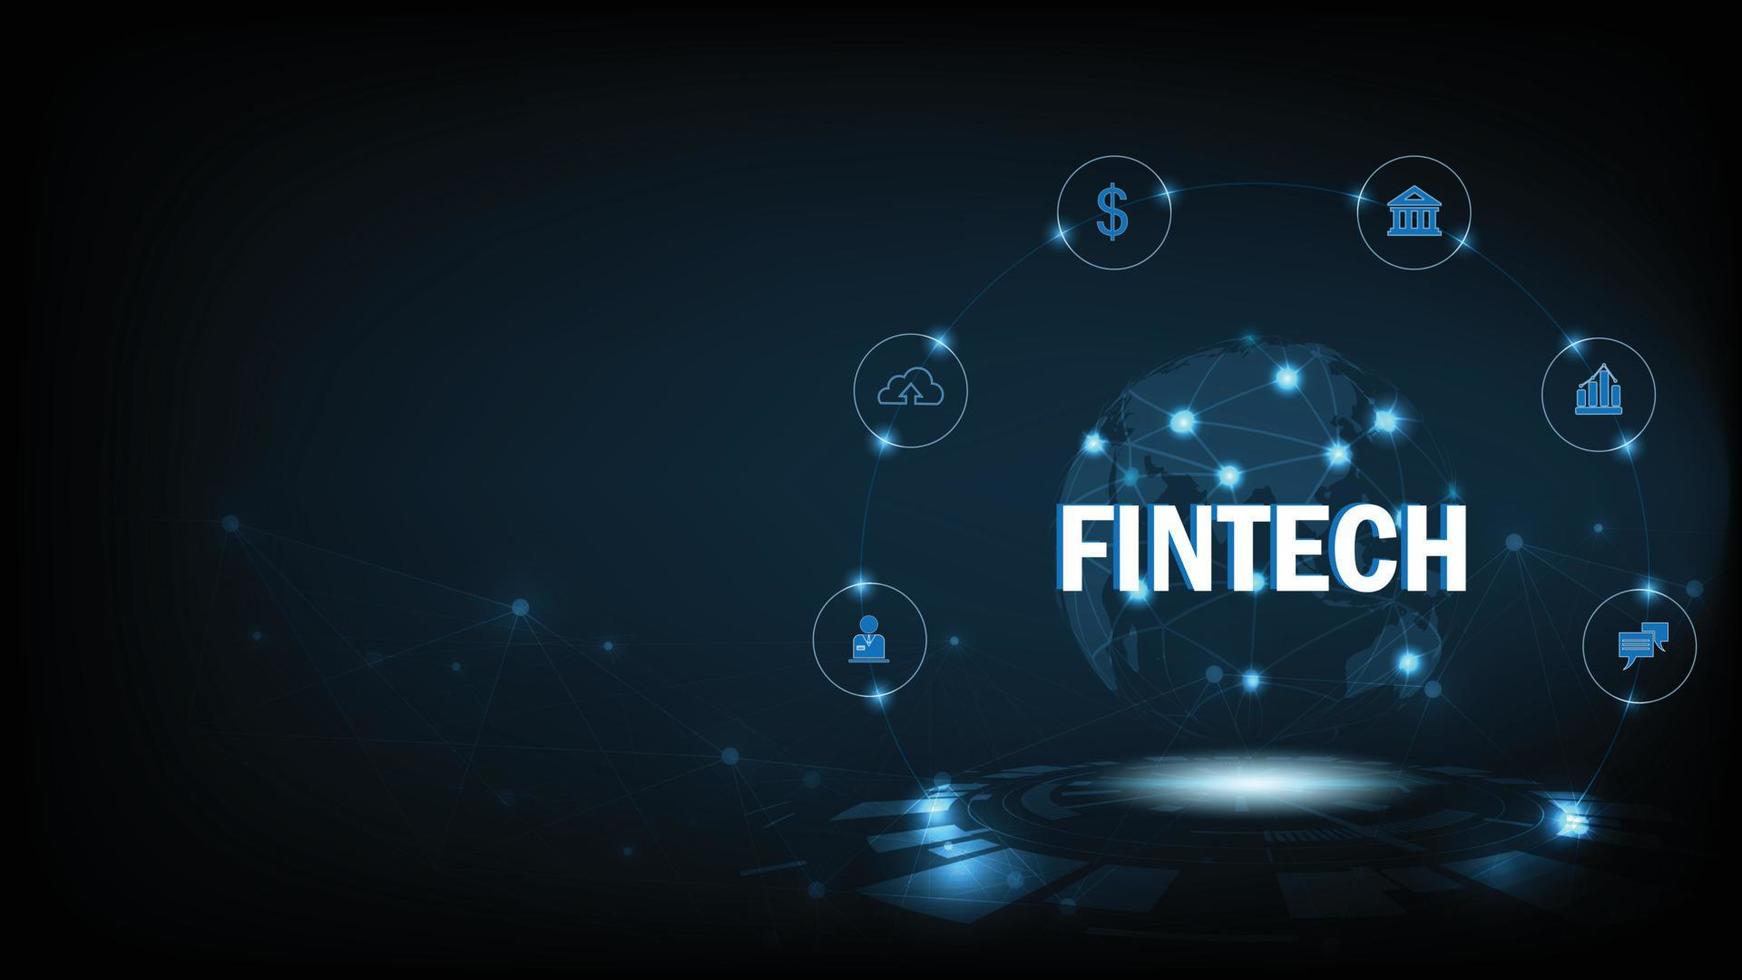 finansiell teknologi och företag värld class.icon fintech och saker på mörk blå teknologi bakgrund representerar de förbindelse finansiell teknik, bank och företag värld klass. vektor